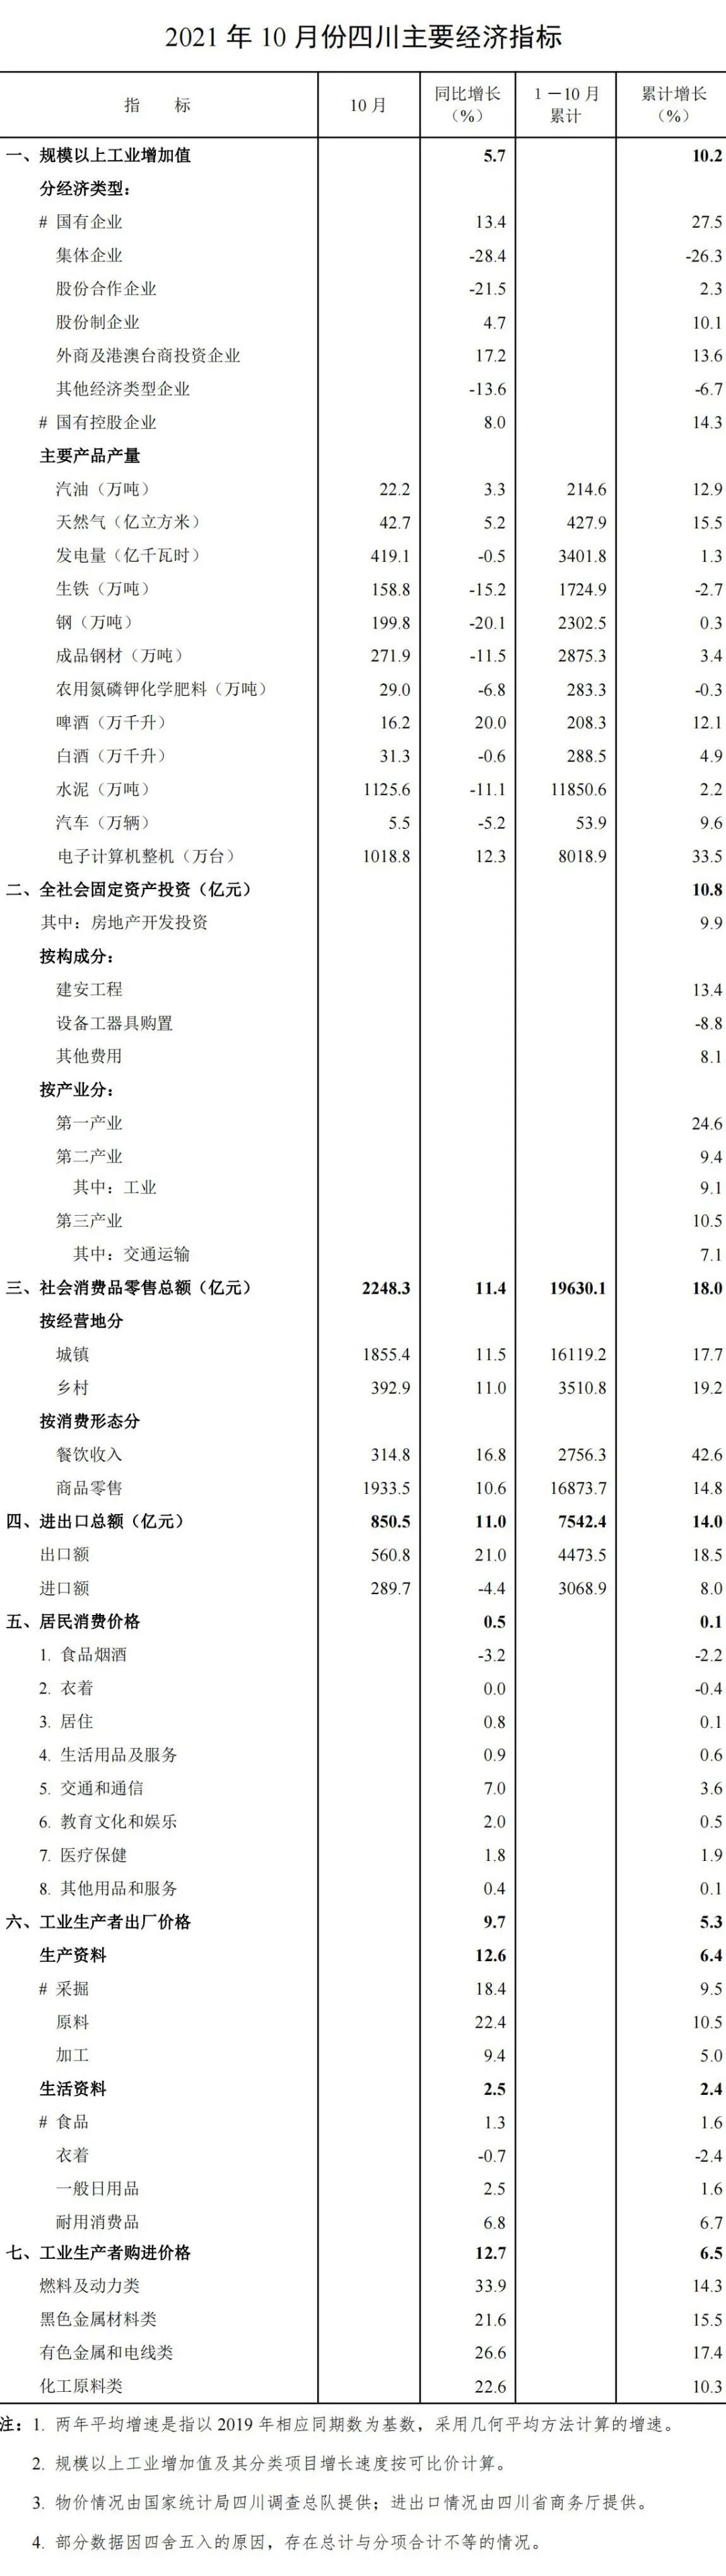 2021年1-10月四川省国民经济主要指标数据.jpg